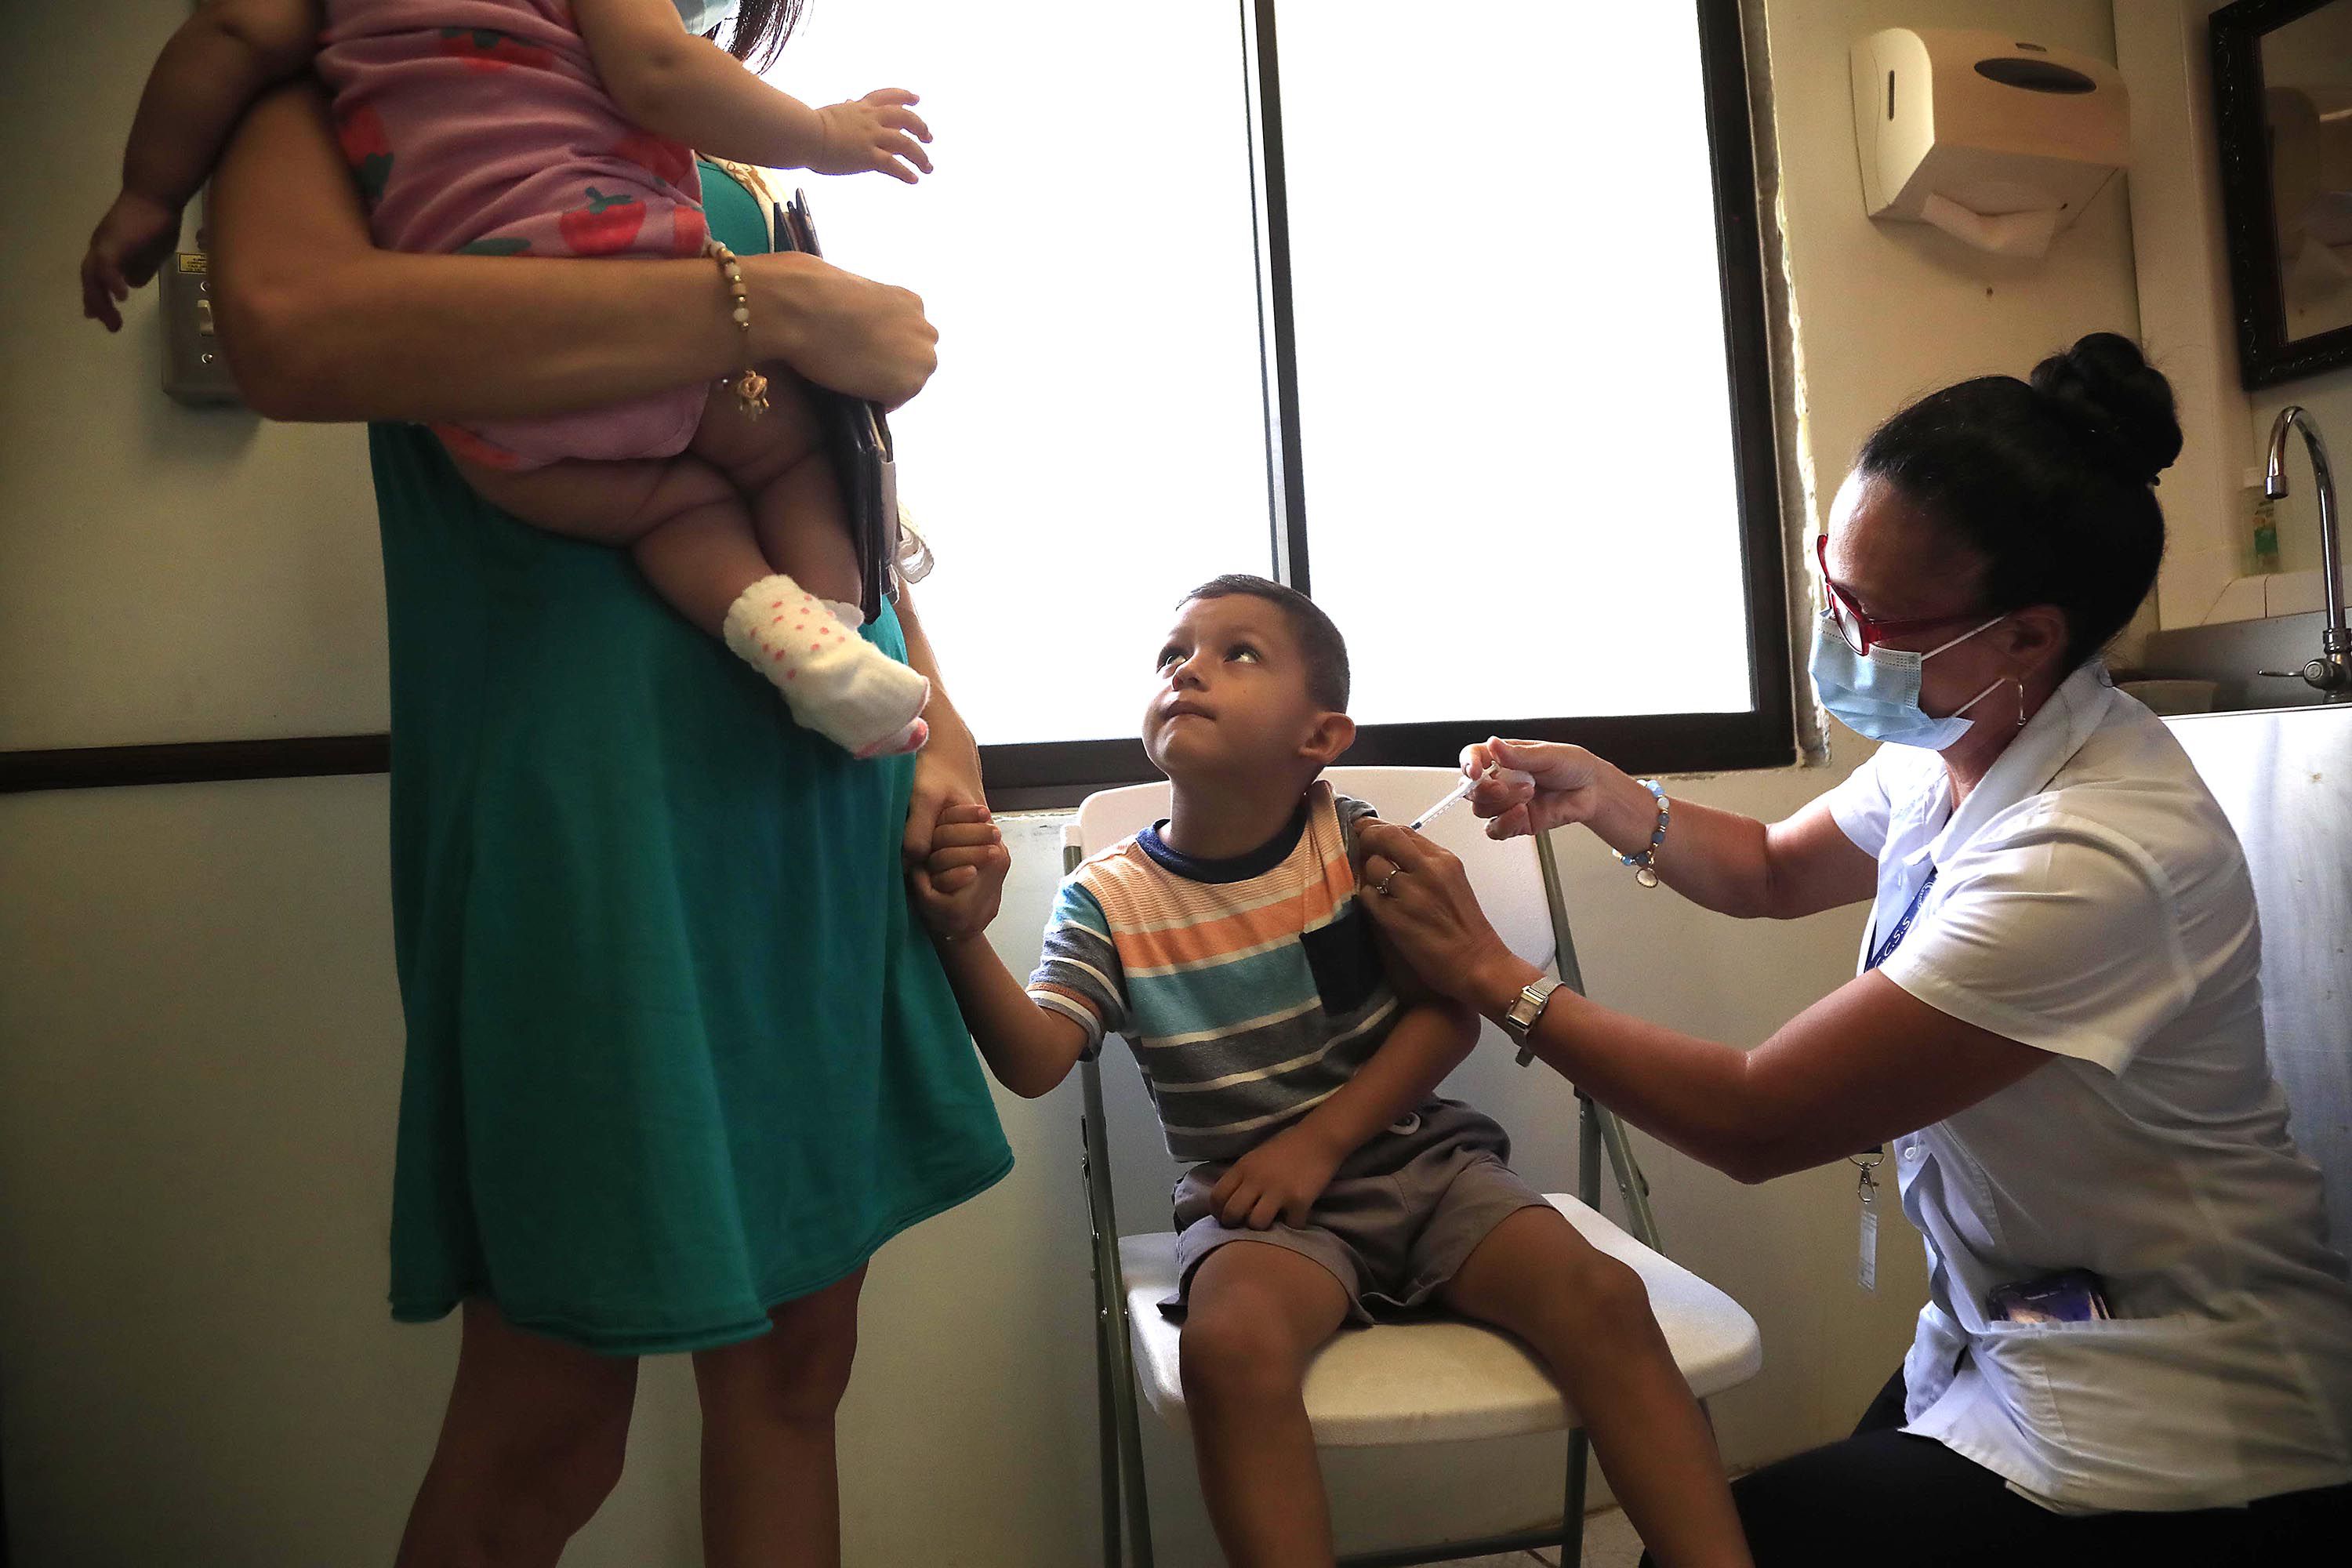 En noviembre pasado, esta familia acudió a recibir la vacuna contra la covid-19 en la Clínica de Cóbano, en Puntarenas. Poco más de un mes después, ya niños entre los 5 y 11 años no tenían esta posibilidad.